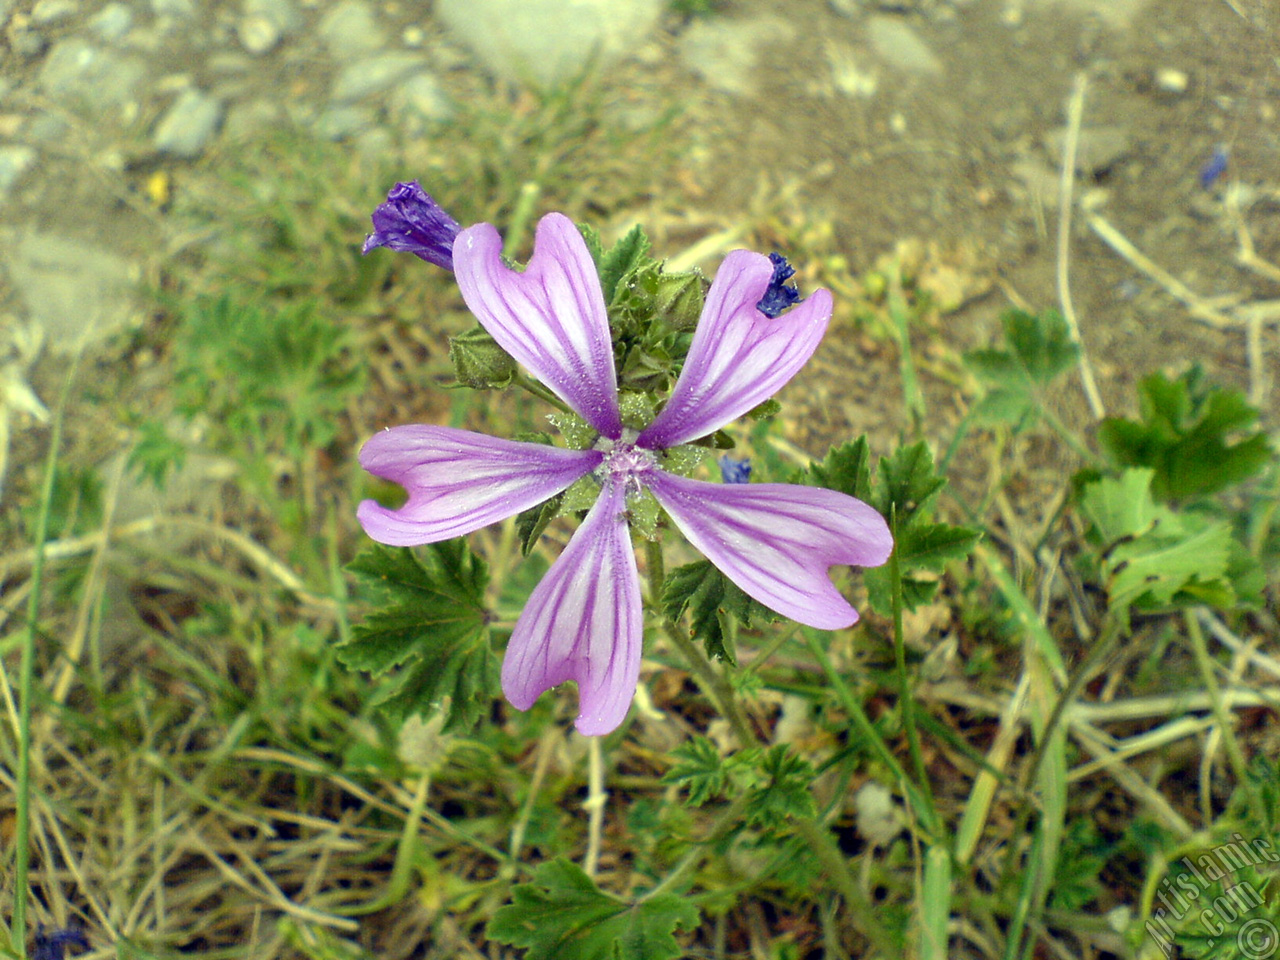 Purple color Erica flower.
